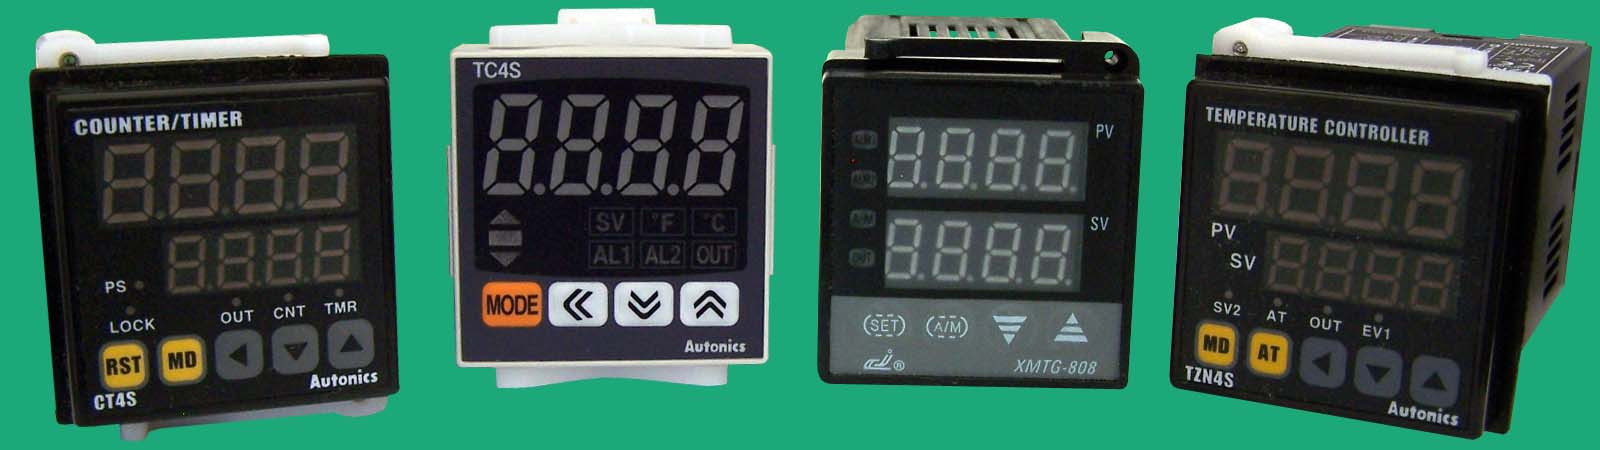 controles de temperatura para termopares